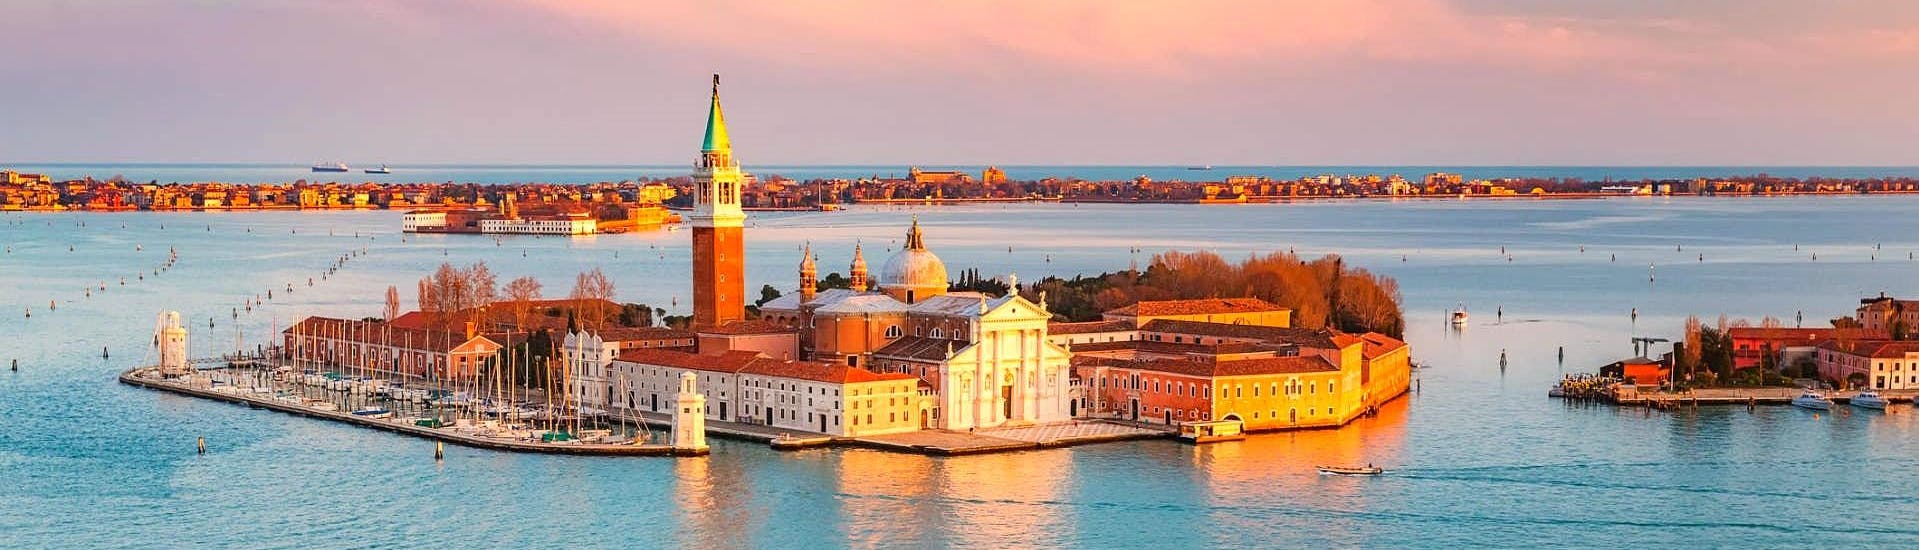 Vue sur l'île de San Giorgio Maggiore, qui peut être observée lors d'une balade en bateau privé le long des canaux vénitiens au coucher du soleil avec Venice Boat Experience.